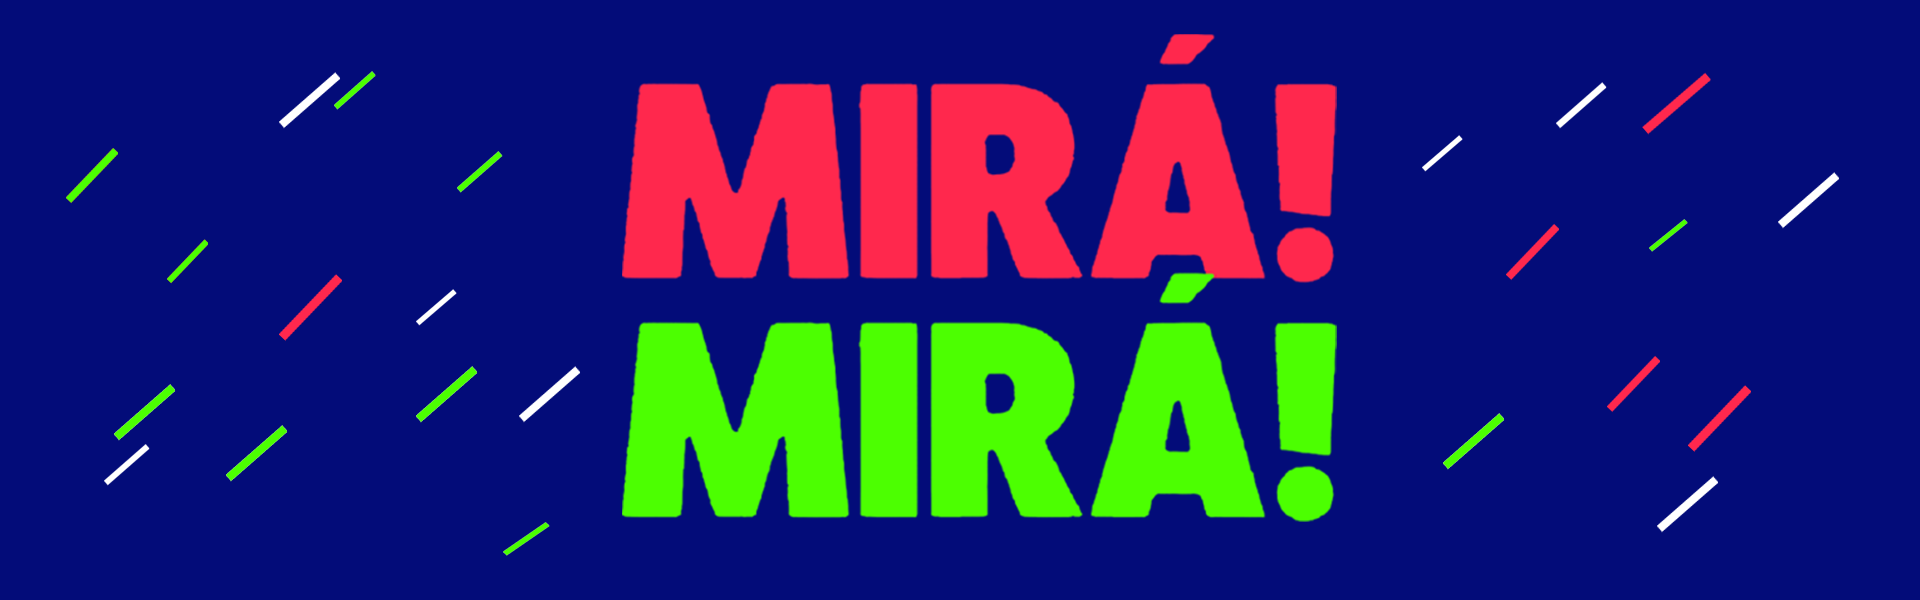 banner-miramira